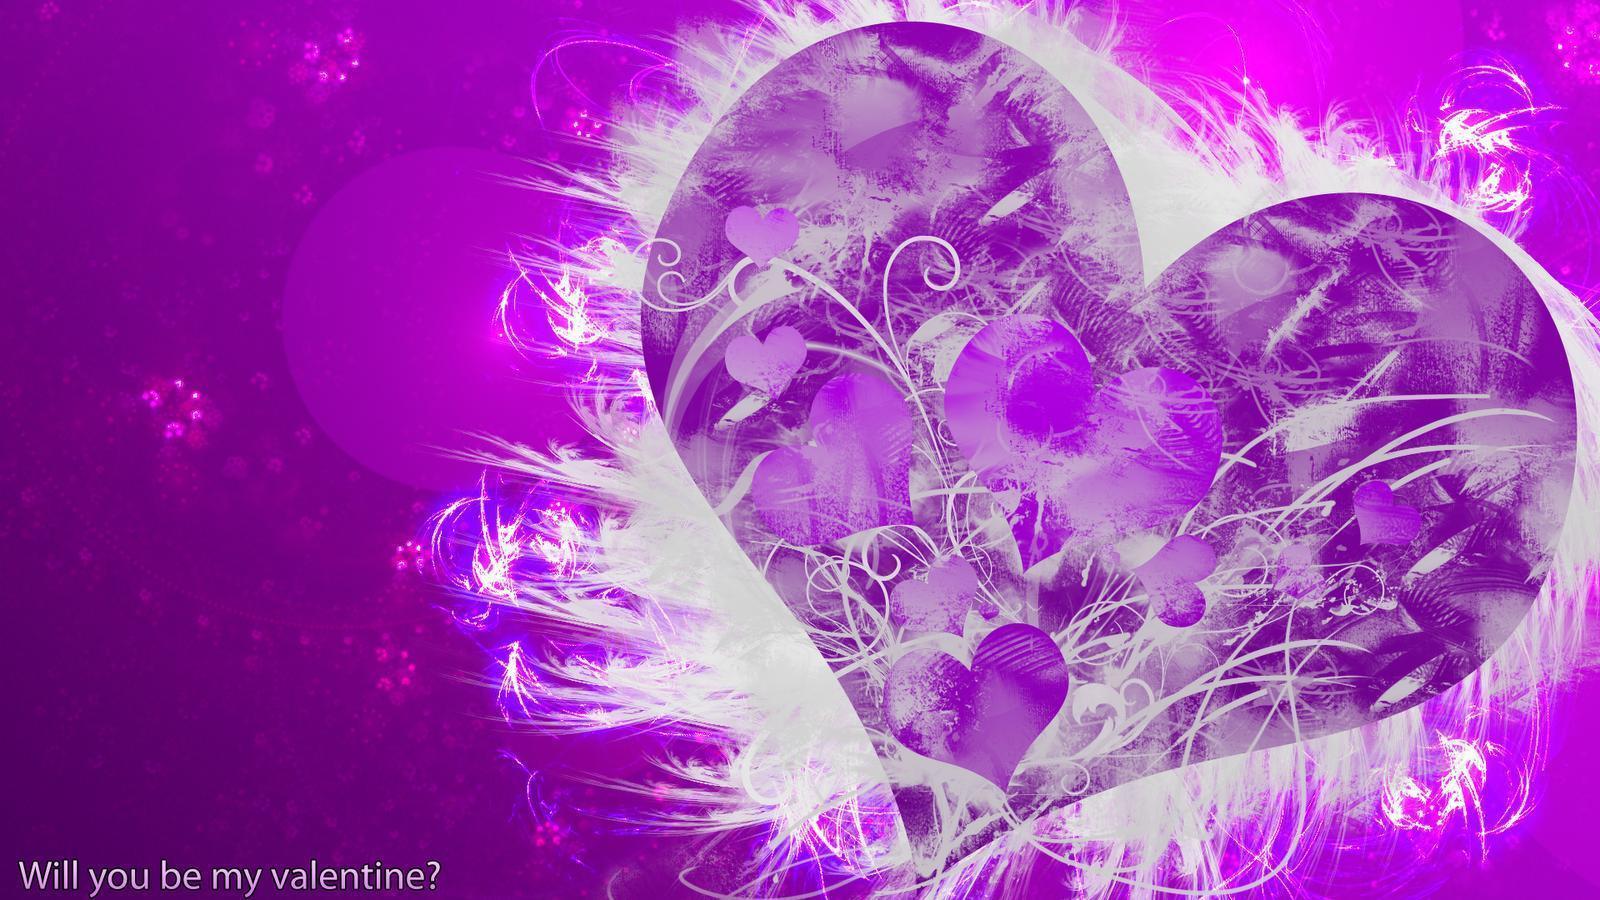 Purple Hearts Wallpaper